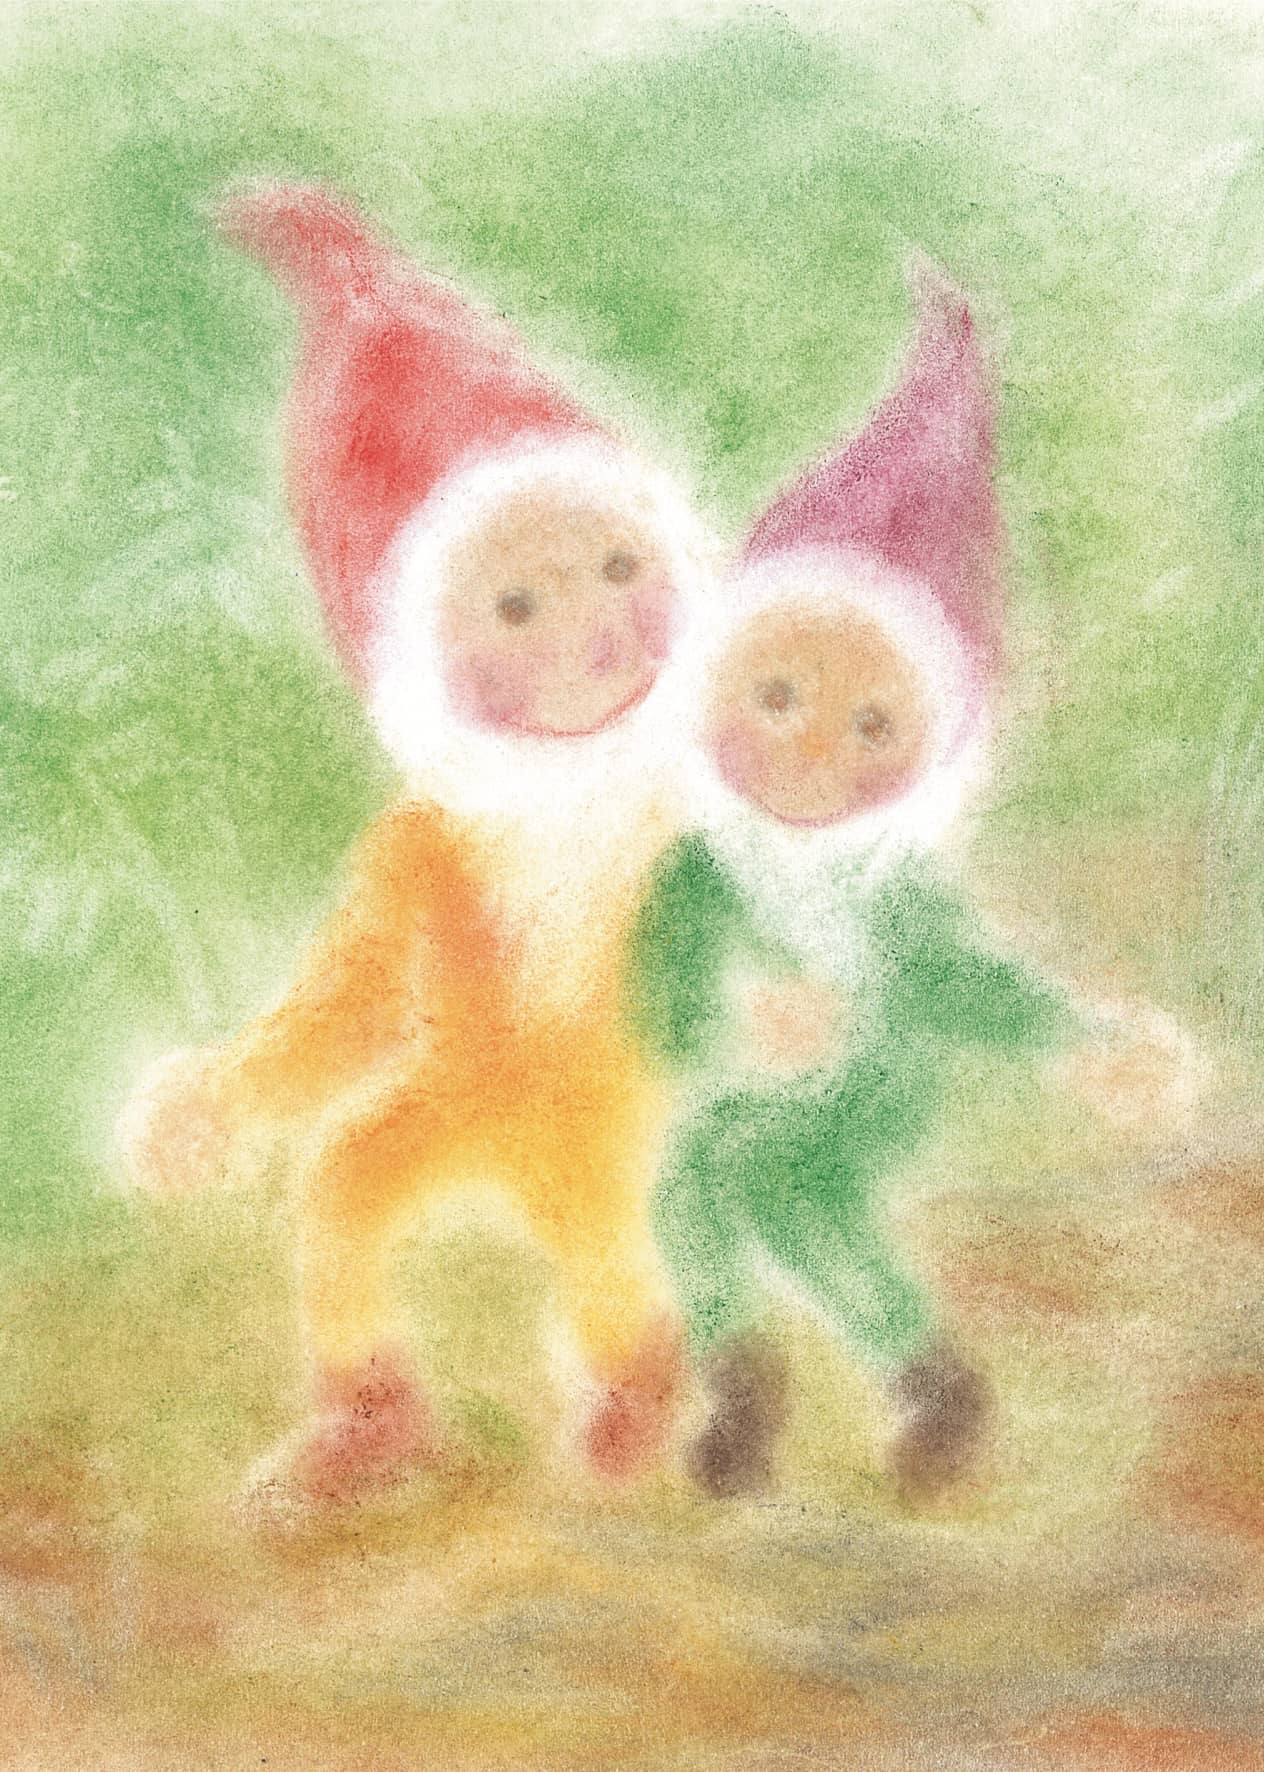 Seccorell-Postkarte "Geschwisterzwerge" mit zwei lächelnden Zwergen in harmonischen Grün- und Orangetönen.